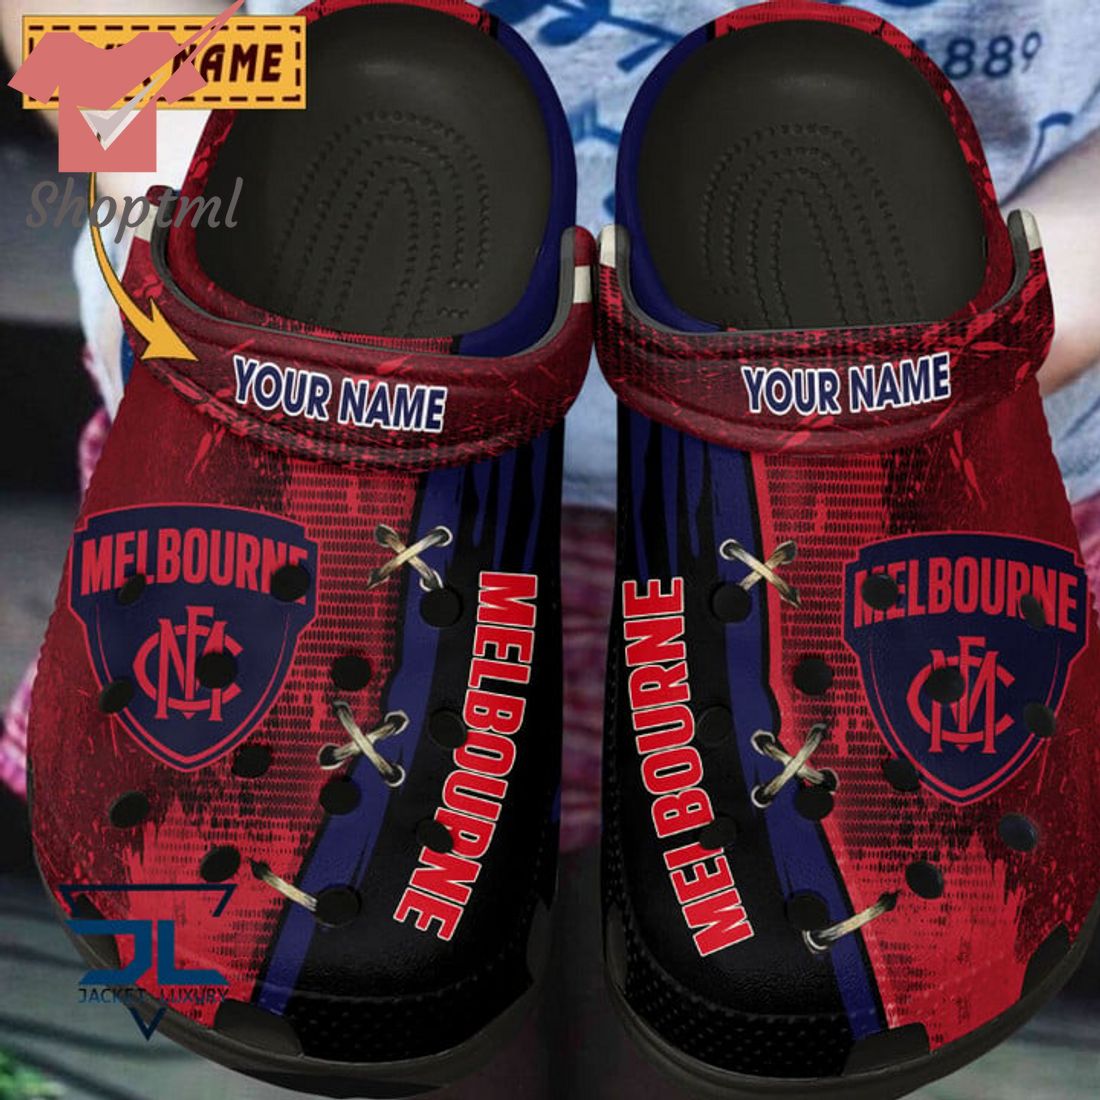 Melbourne Football Club Custom Name Crocs Clog Shoes